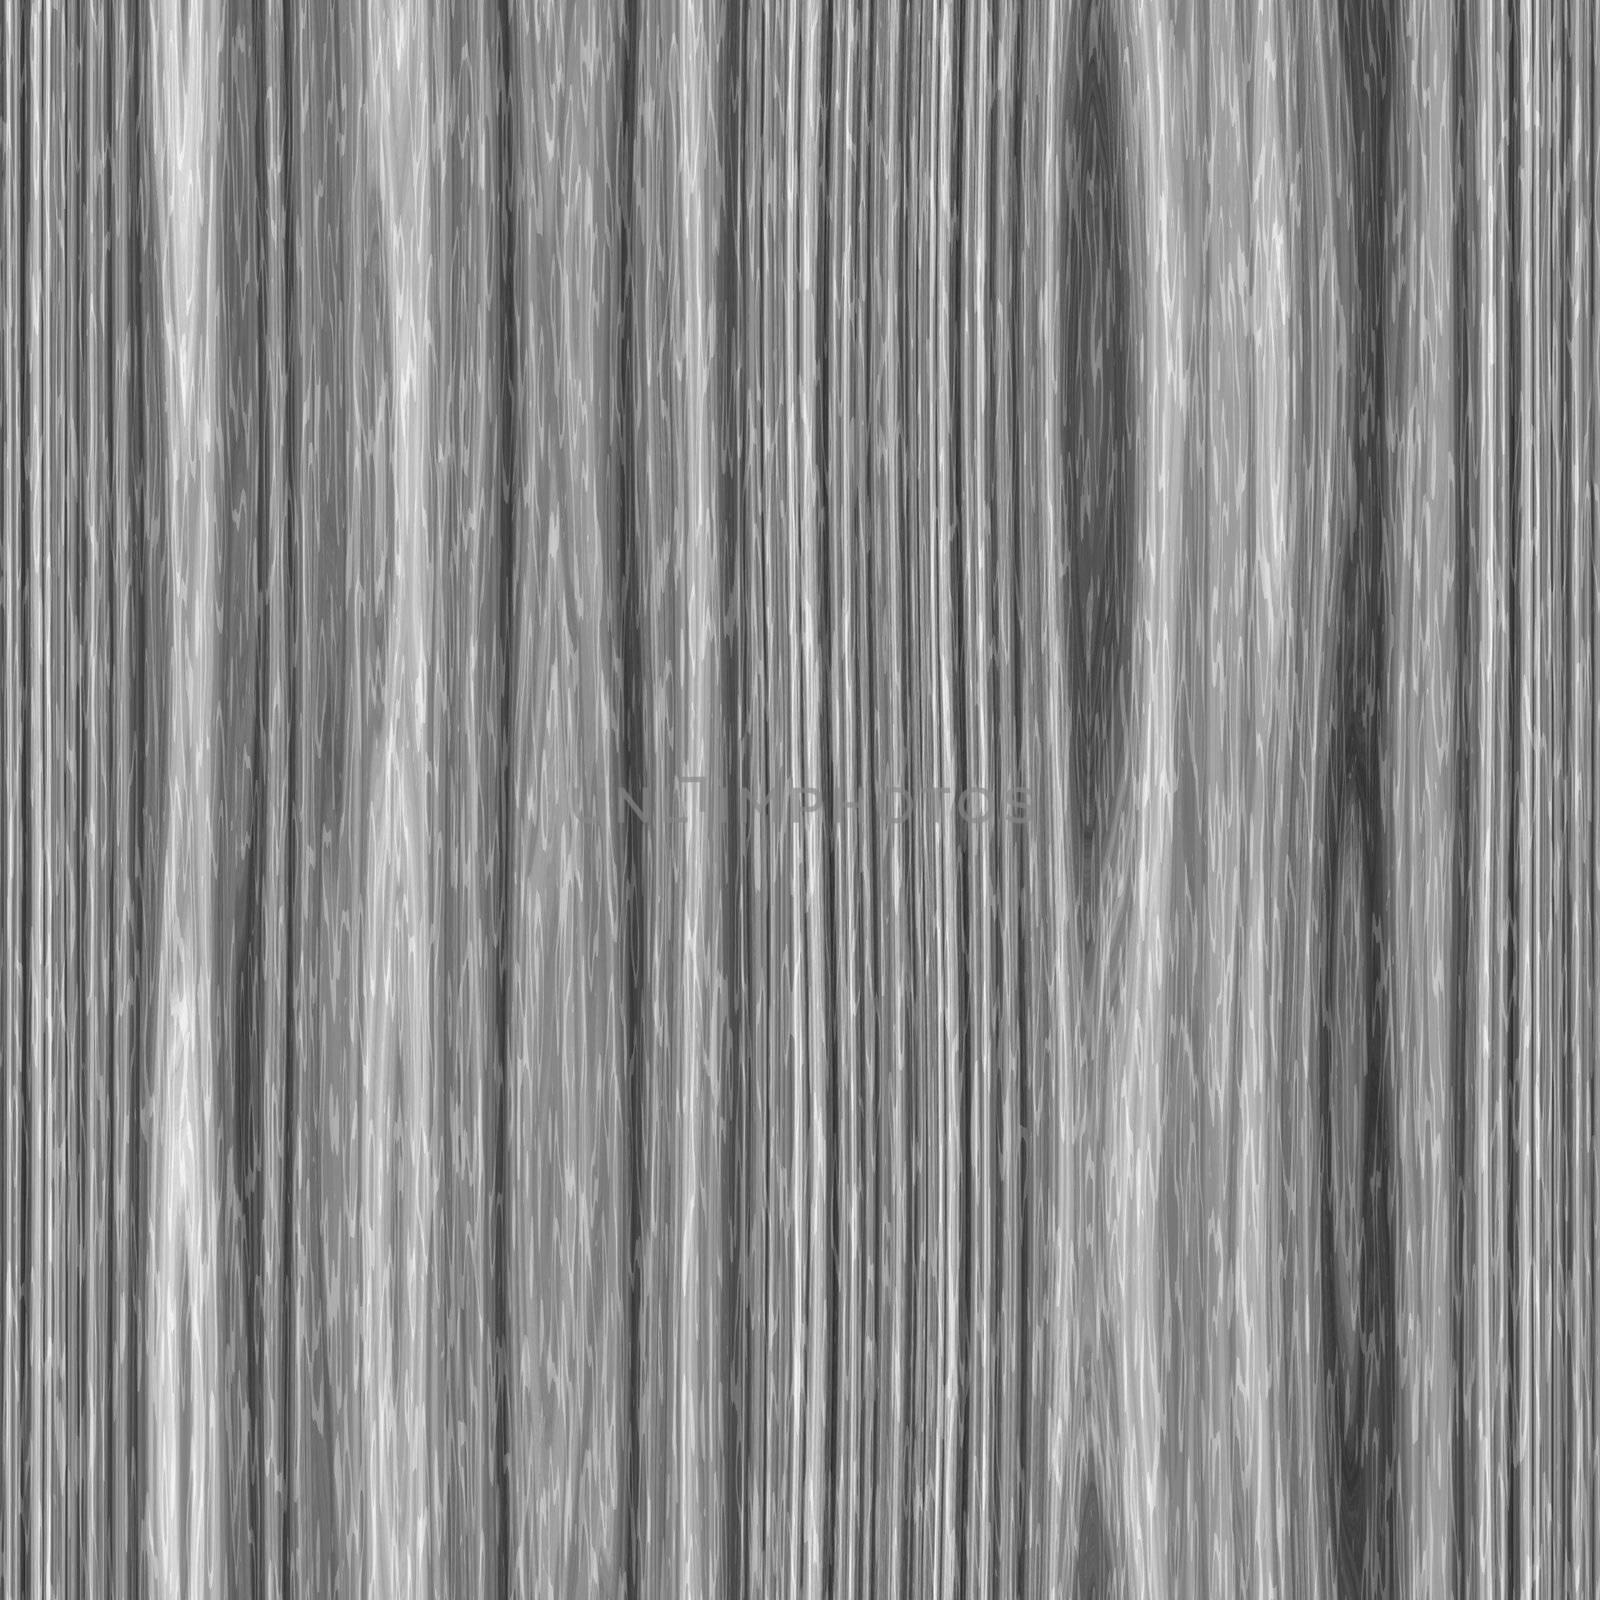 Blakck White Woodgrain Pattern by graficallyminded